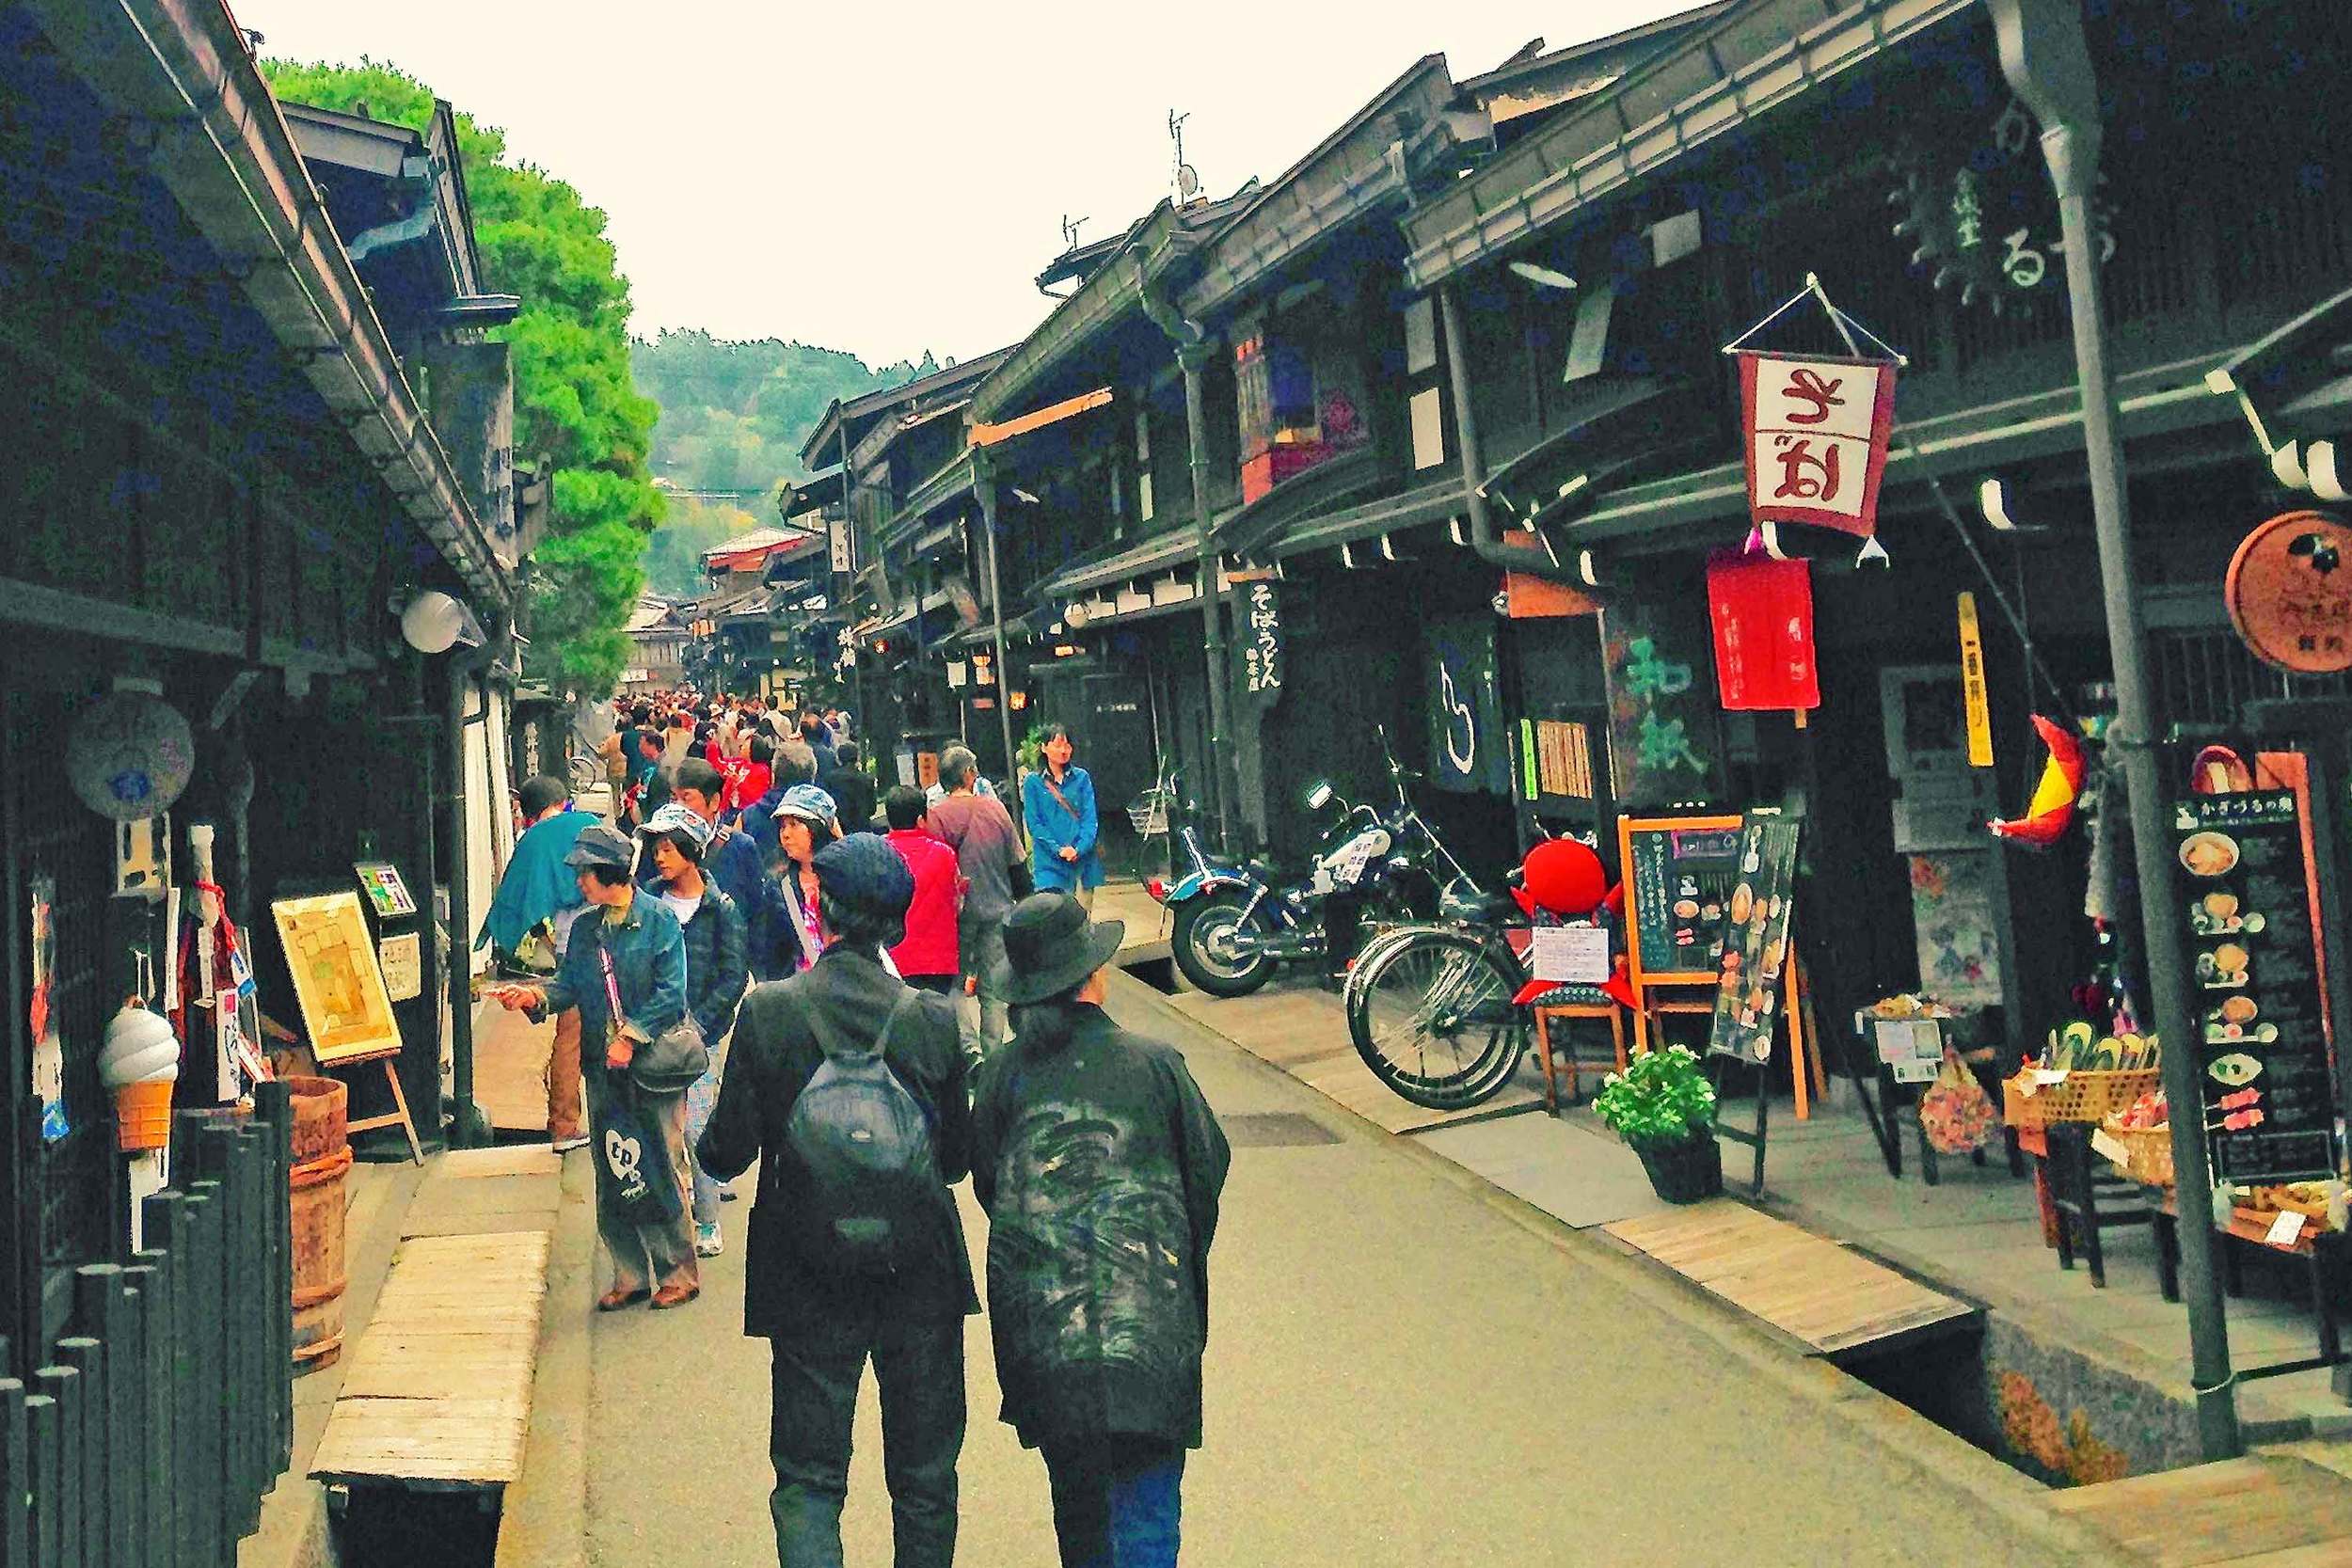 Takayama "Little Kyoto" backstreets.